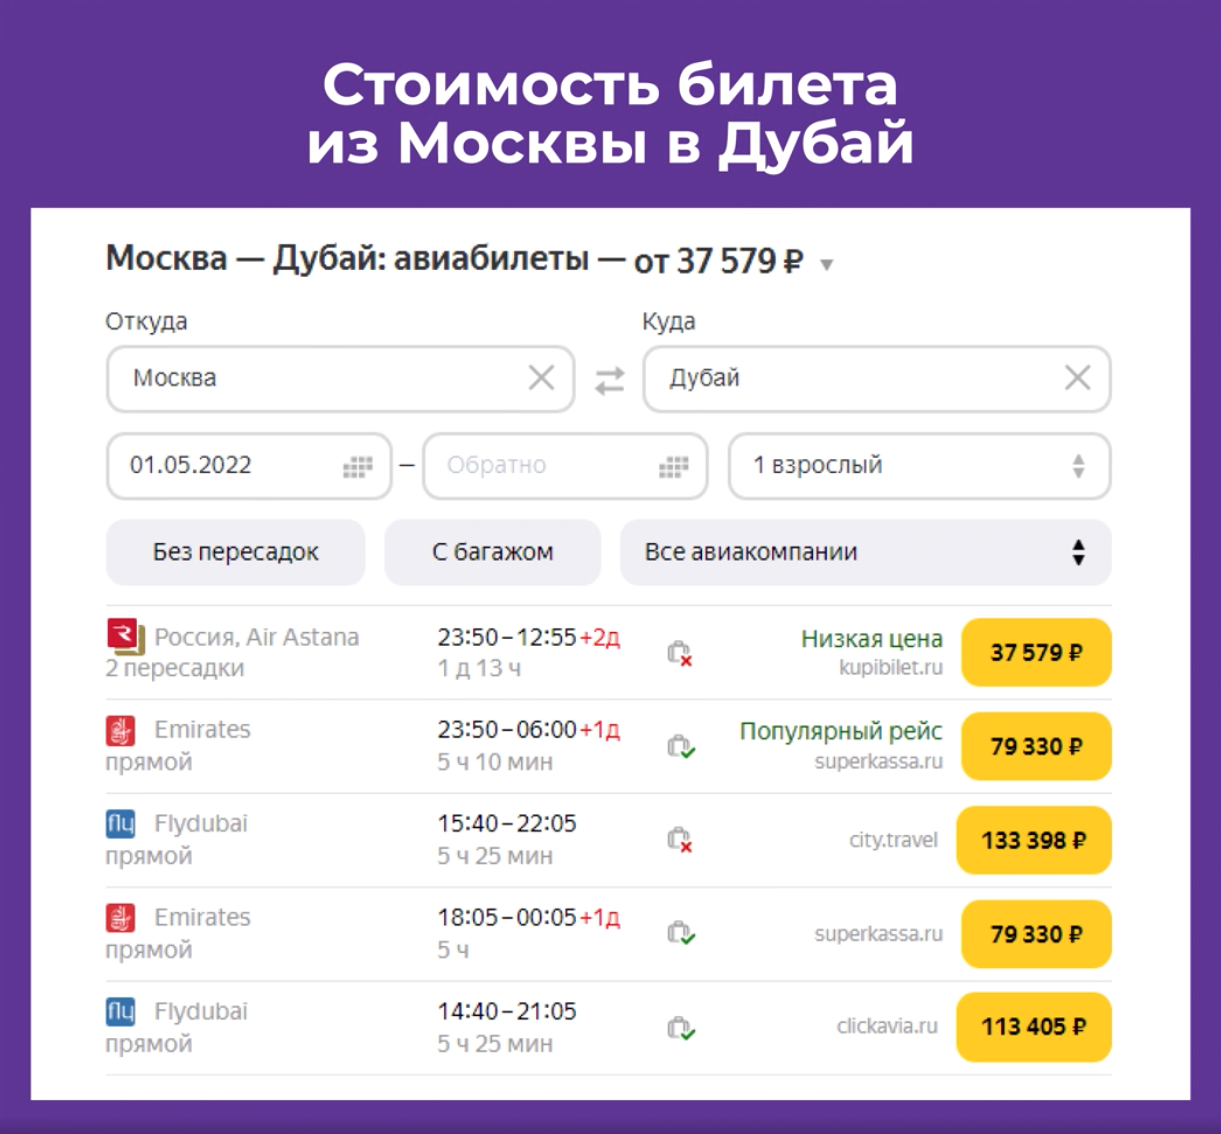 Стоимость билетов Москва - Дубаи